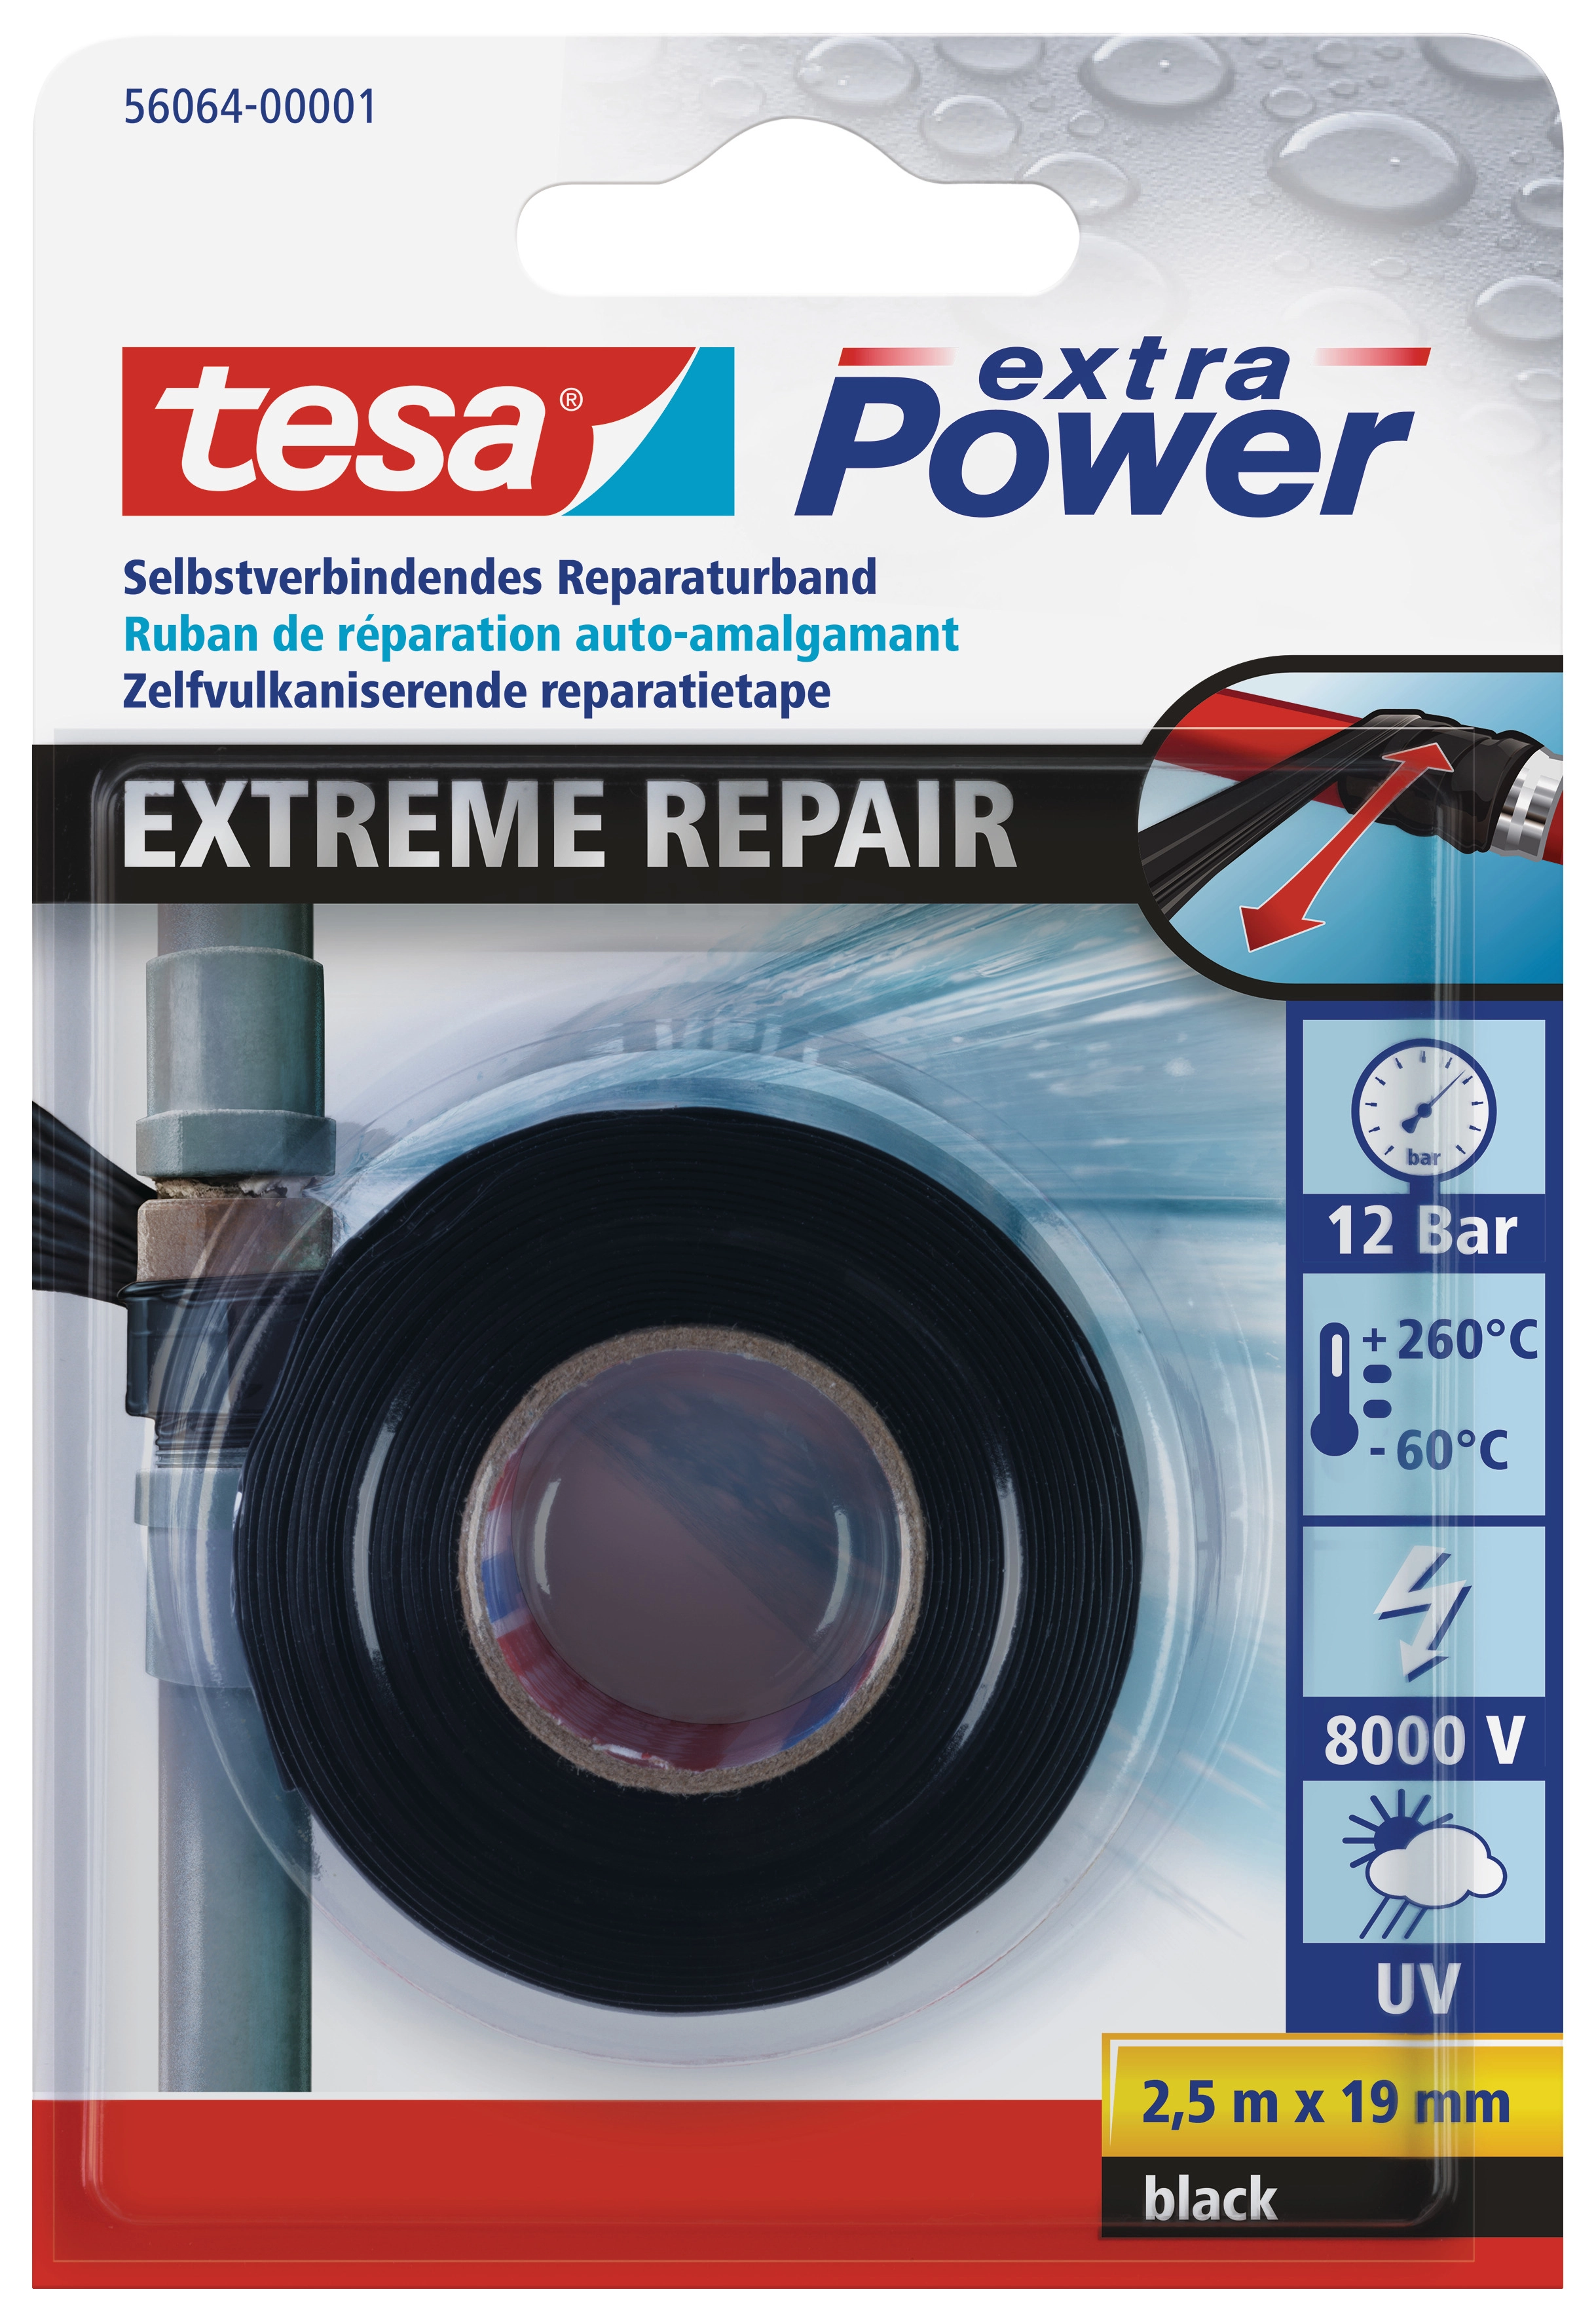 Tesa extra Power Reparaturband Extreme Repair Schwarz 2,5 m x 19 mm kaufen  bei OBI